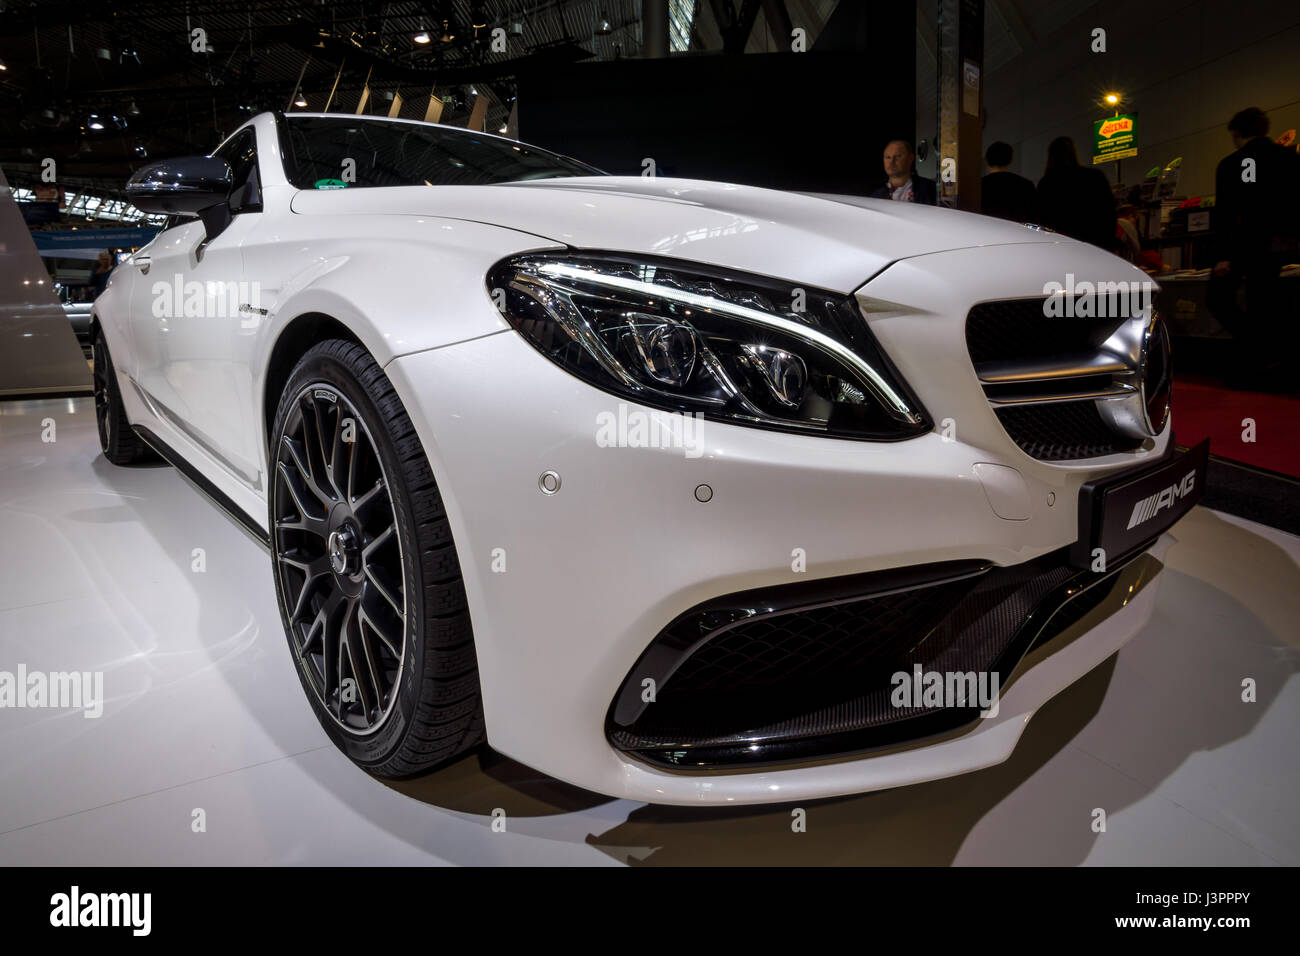 STUTTGART, Deutschland - 3. März 2017: Kompakte Luxus-Auto Mercedes-AMG C63 S Coupe, 2016. Schwarz und weiß. Europas größte Oldtimer-Messe "RETRO CLASSICS" Stockfoto